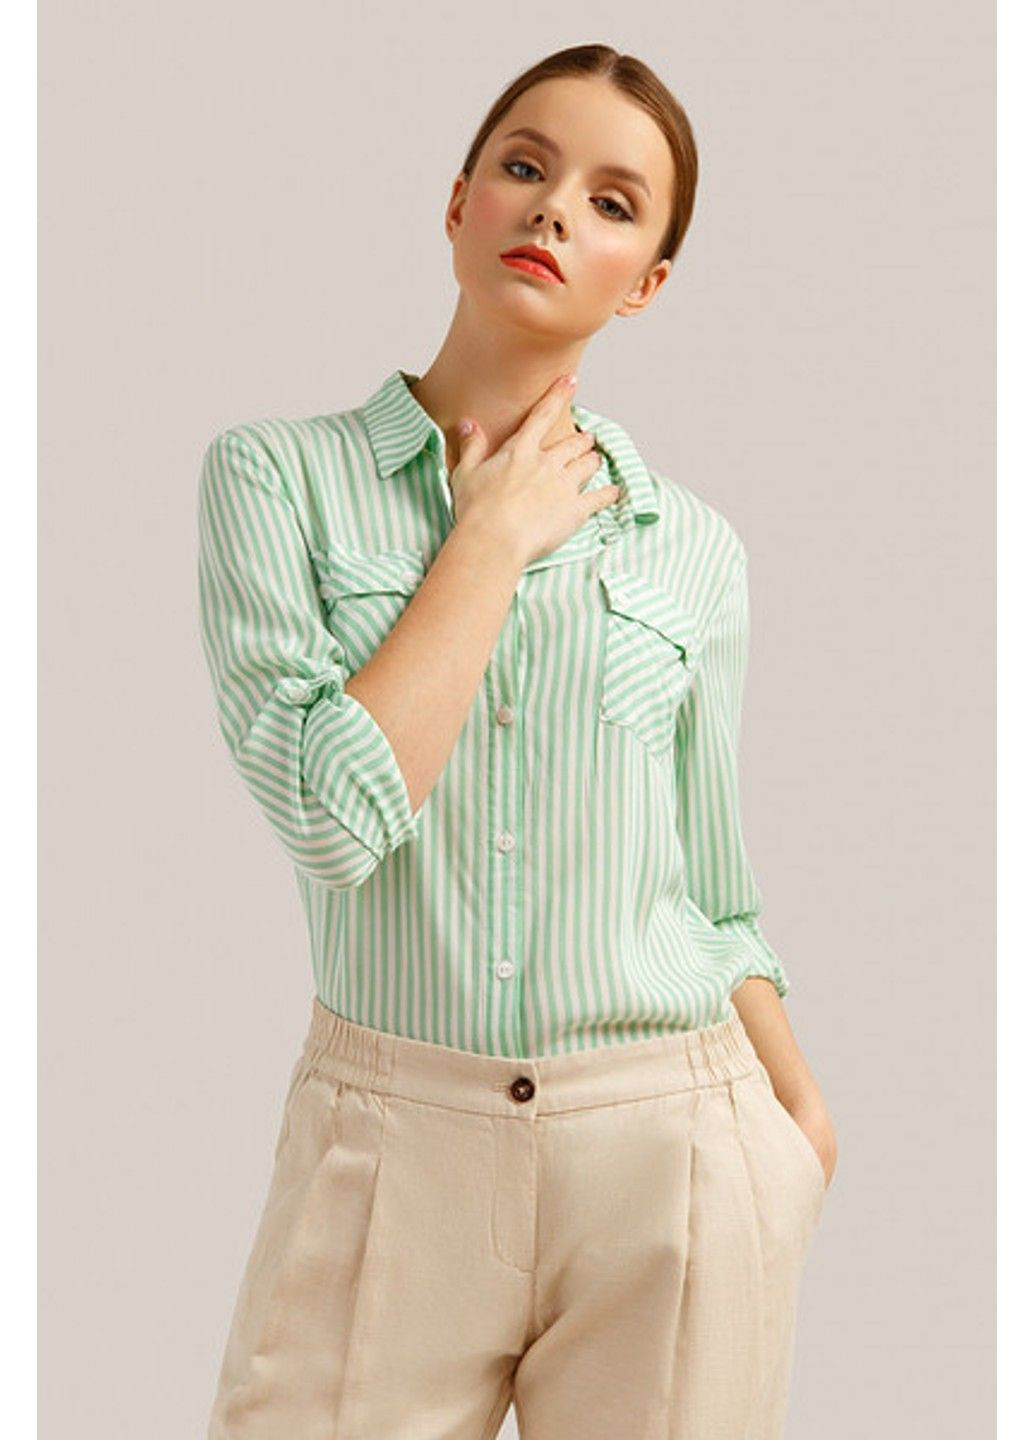 Зеленая летняя блузка s19-140116-513 Finn Flare